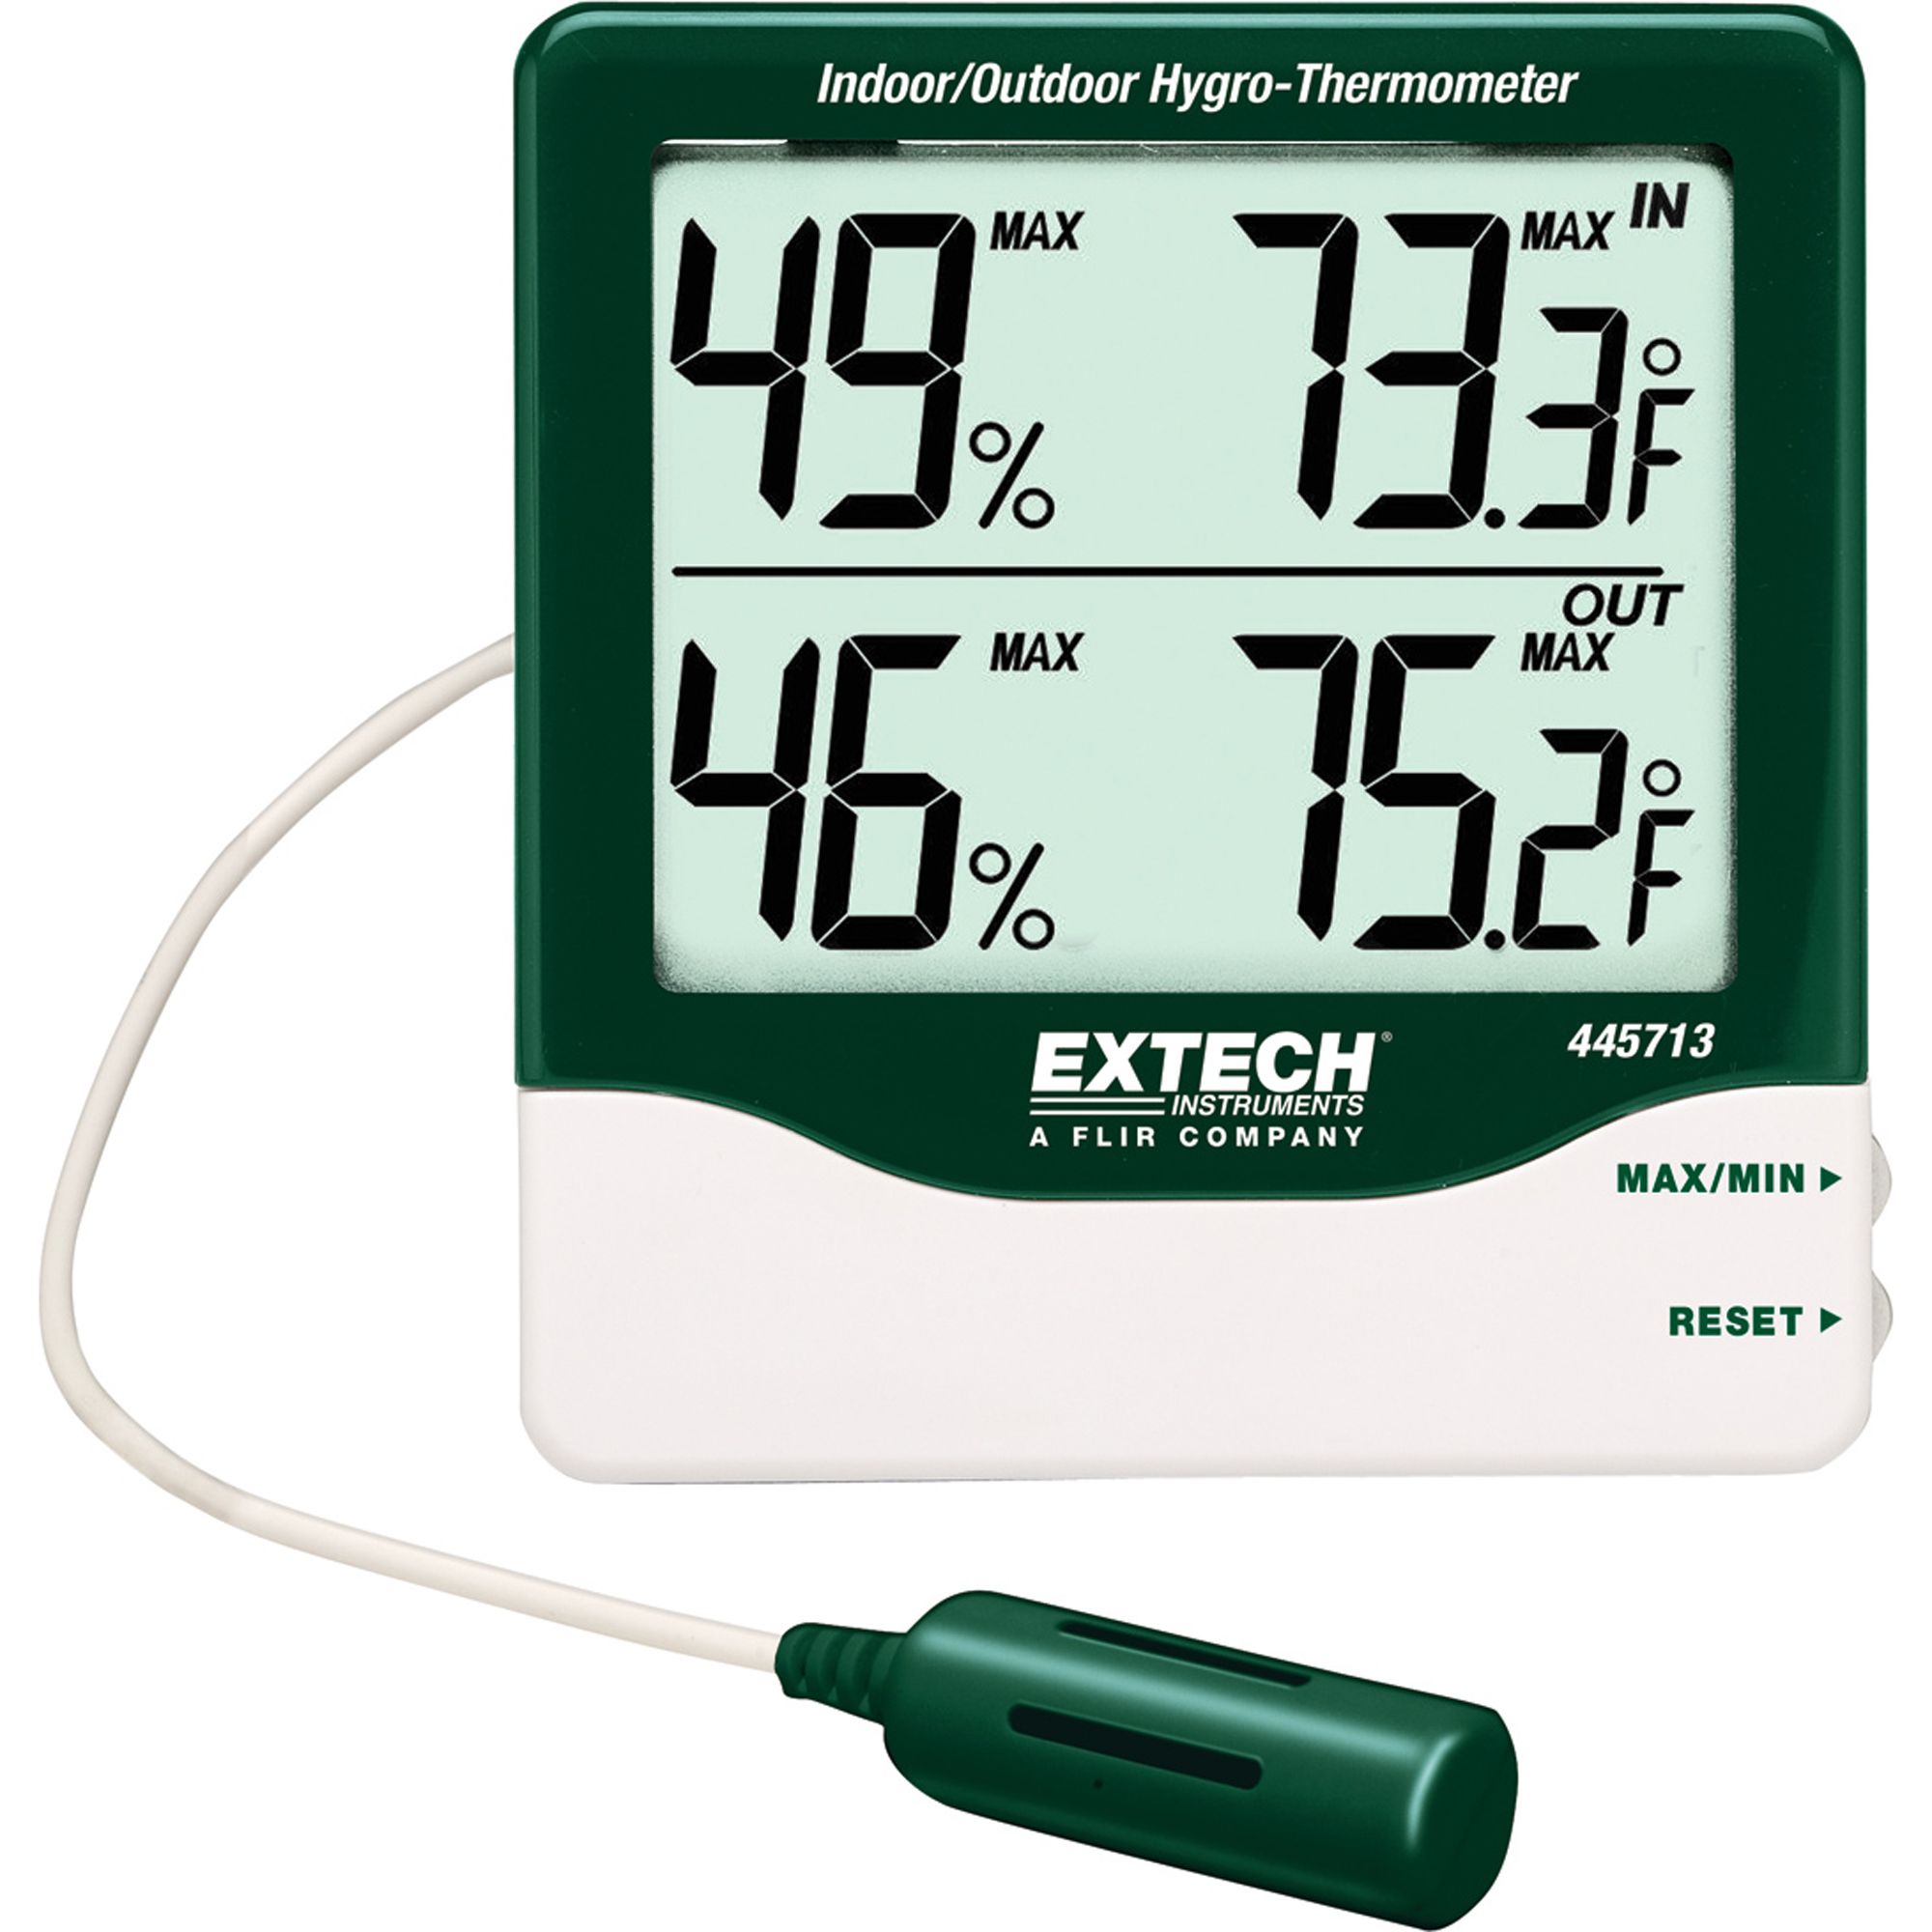 Indoor/ Outdoor Hygrothemometer